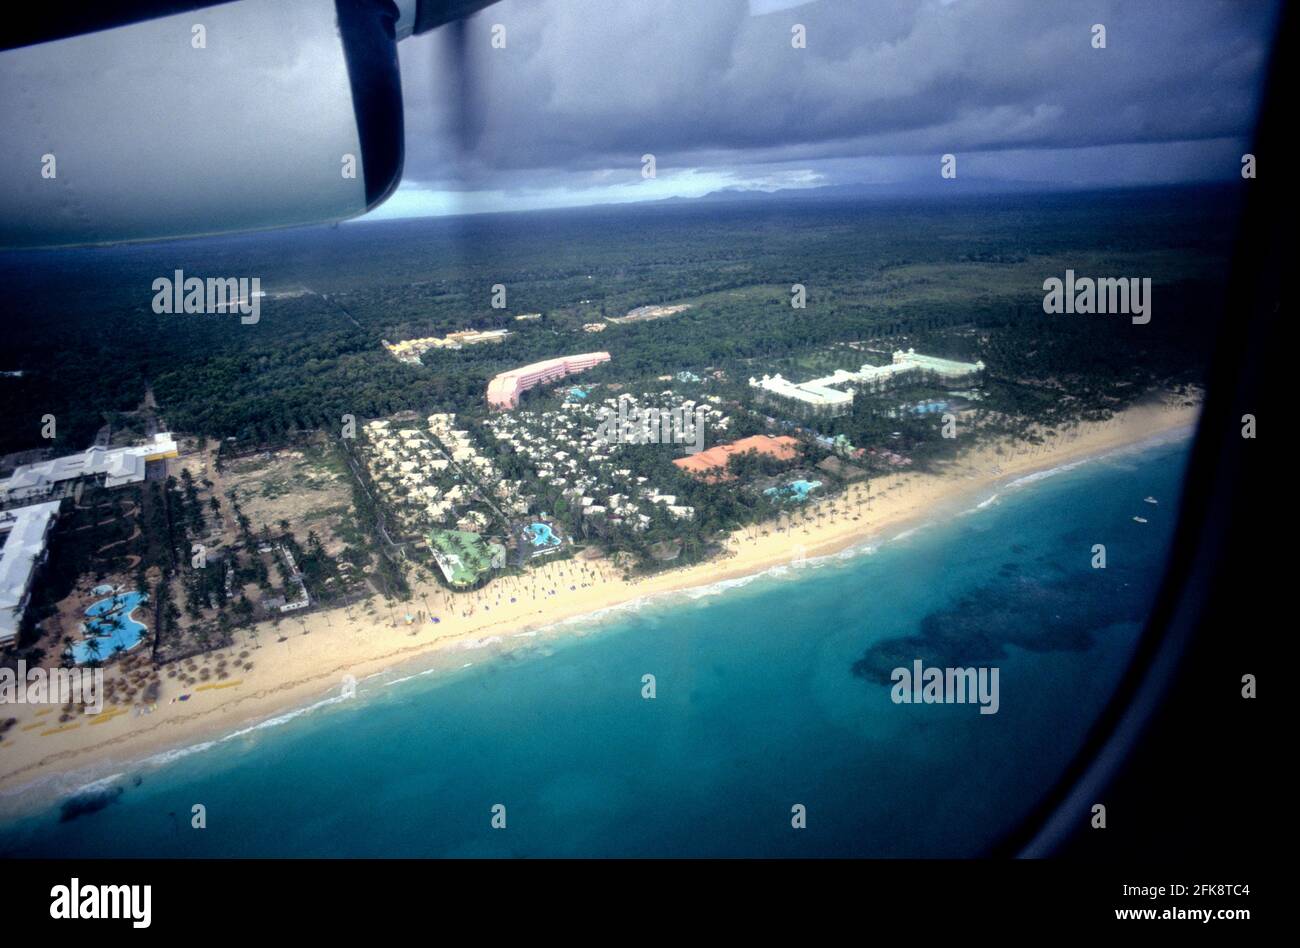 Dominikanische Republik, Blick auf eine Hotel-Anlage an der Nordküste vue sur la plage et l'hôtel Riu Naiboa, Punta Cana, République Dominicaine Banque D'Images